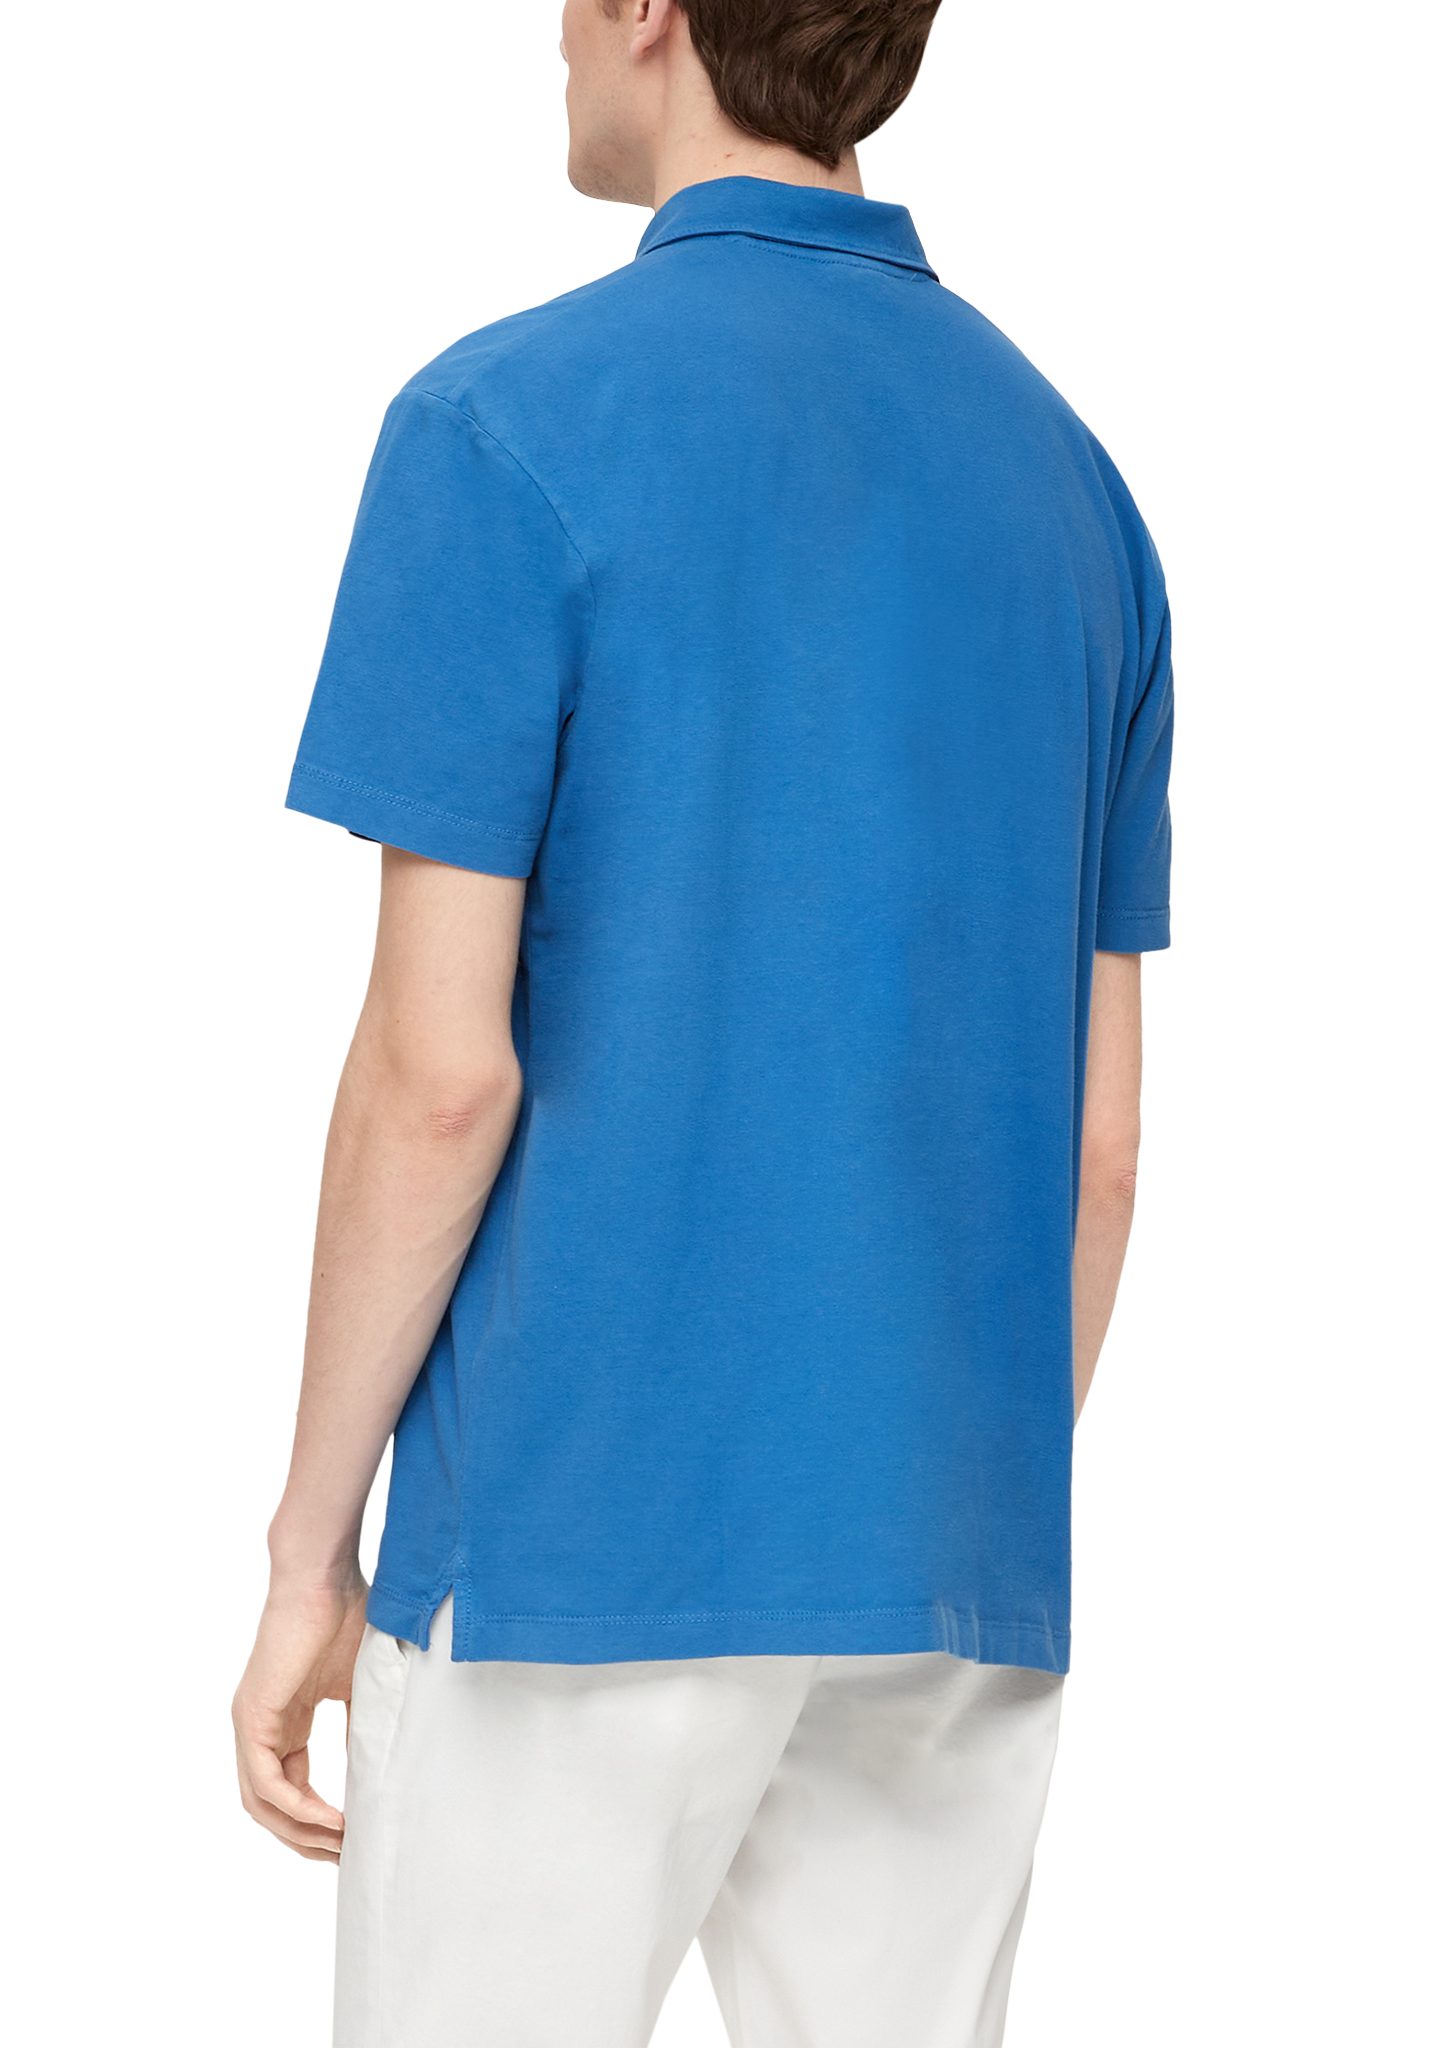 s.Oliver Kurzarmshirt Poloshirt aus Baumwolle Logo royalblau